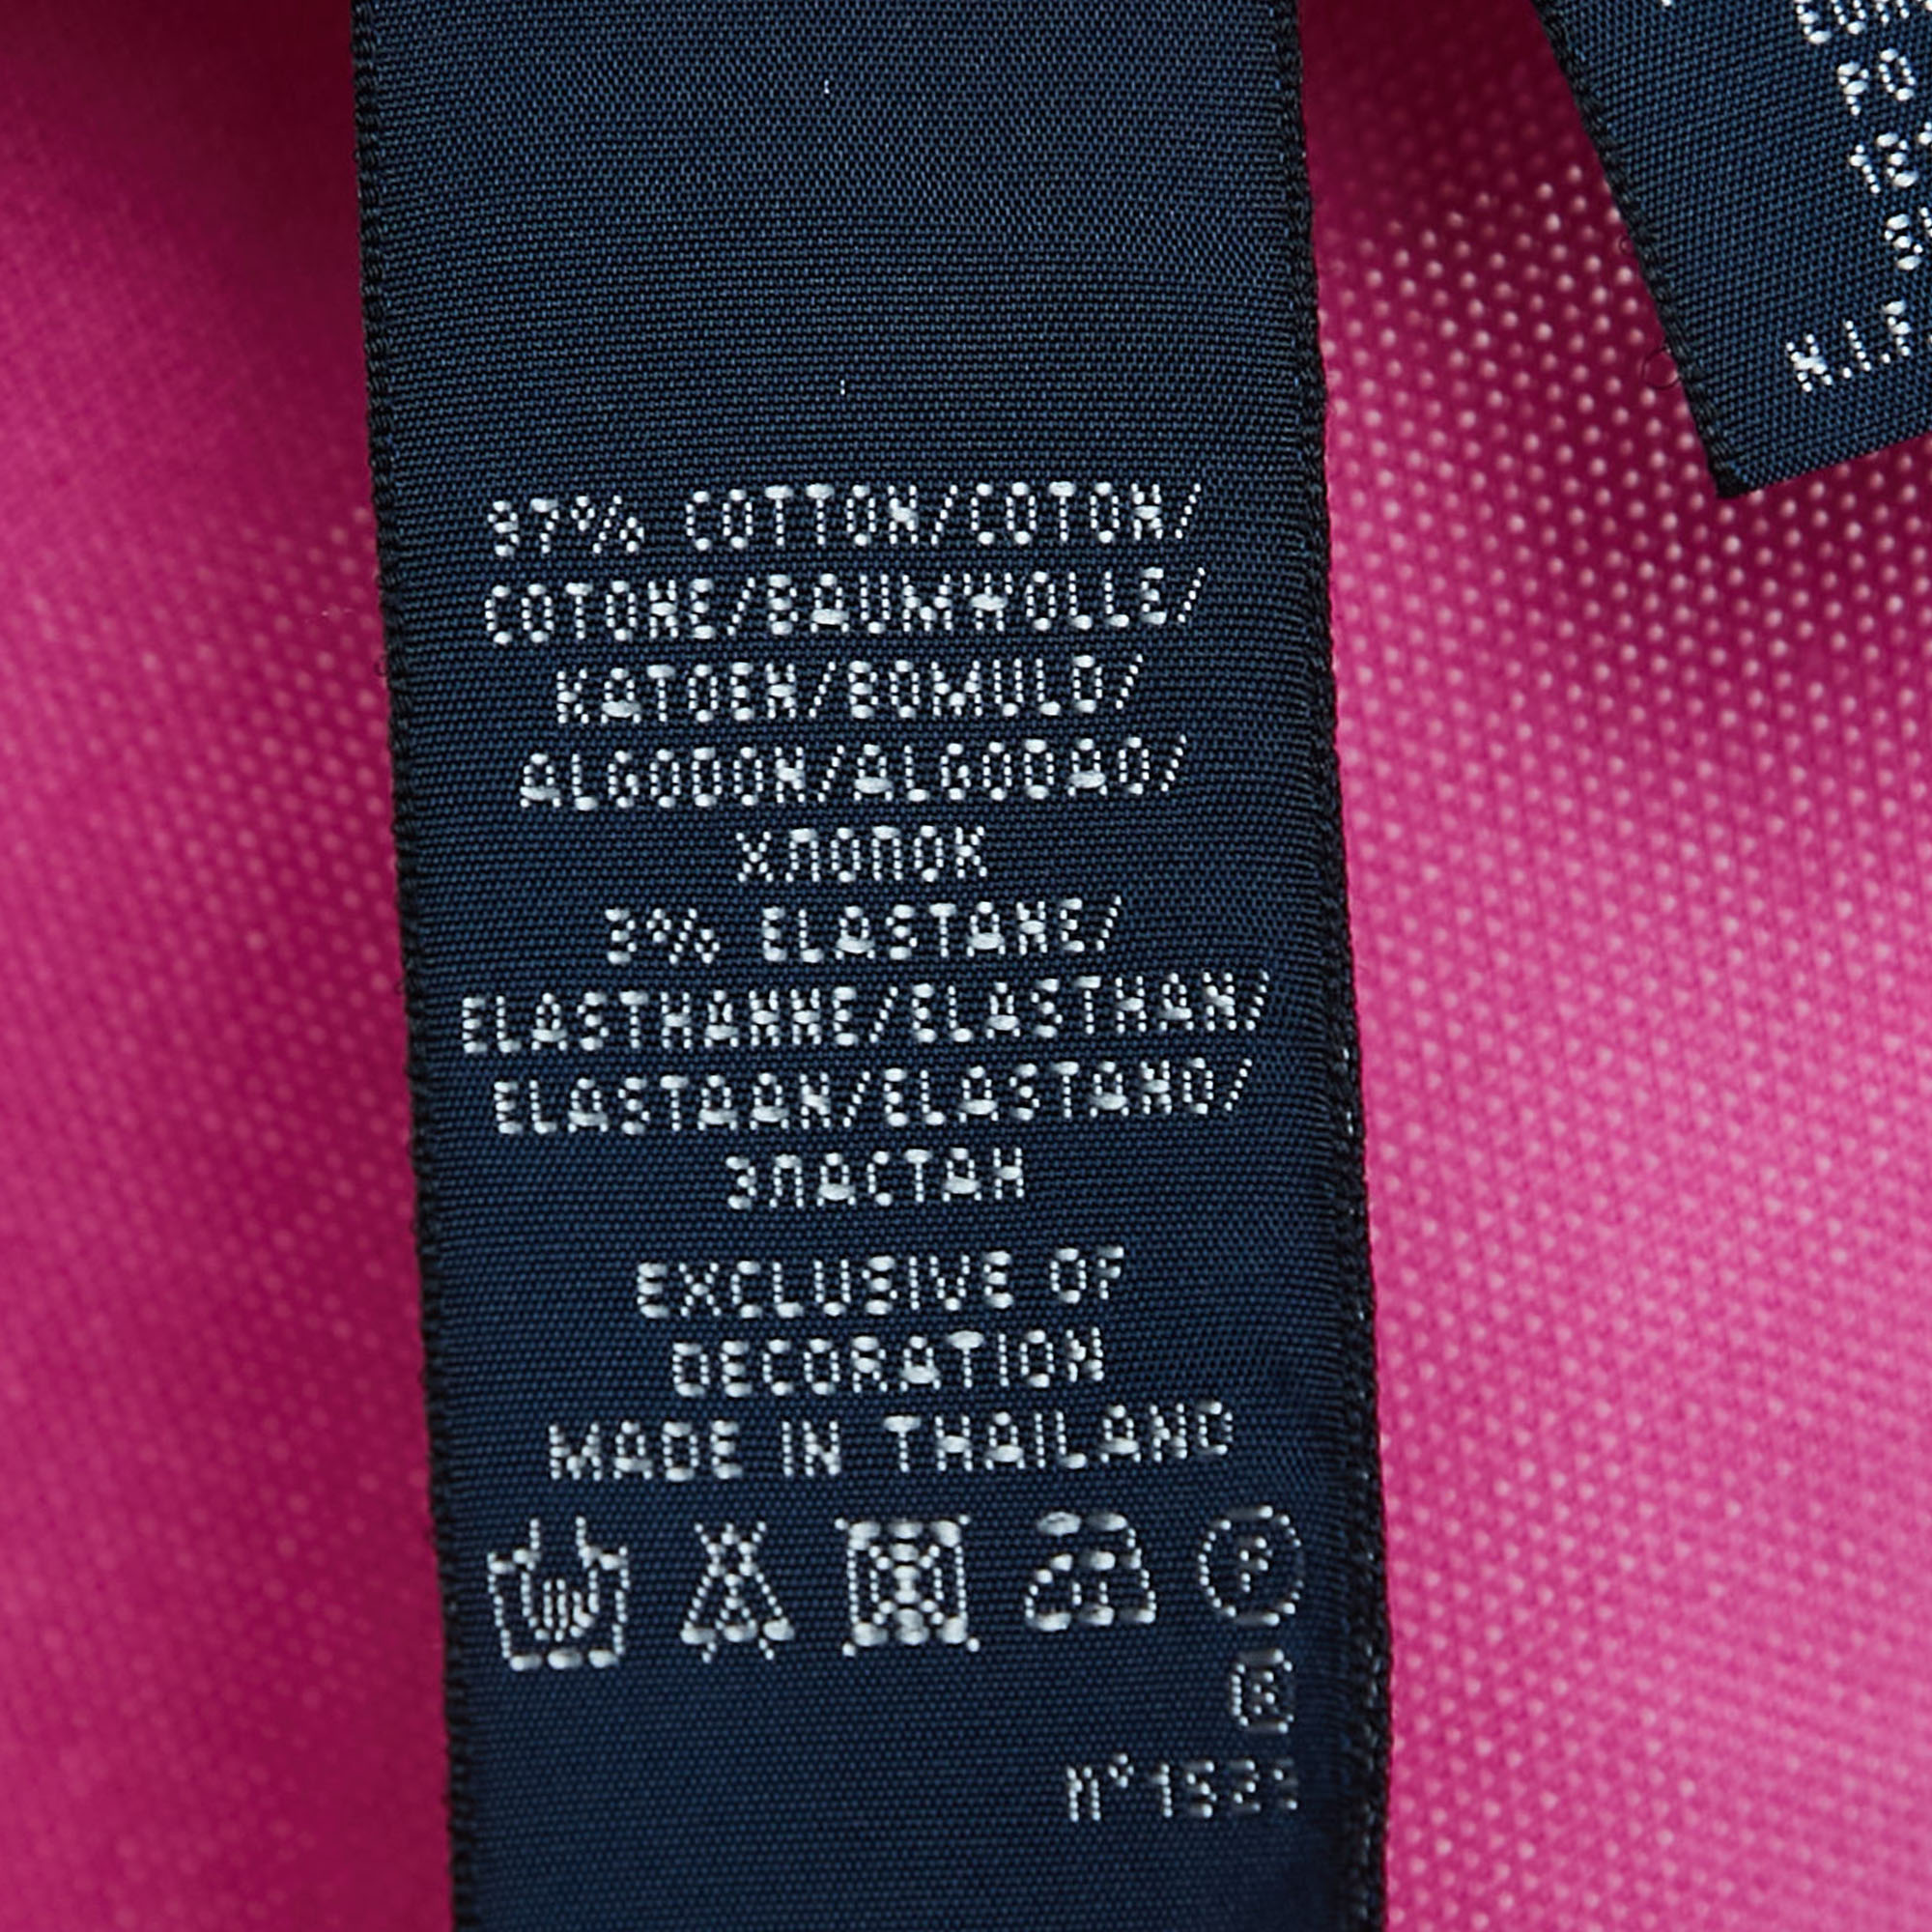 Ralph Lauren Pink Cotton Beaded Logo Polo T-Shirt M